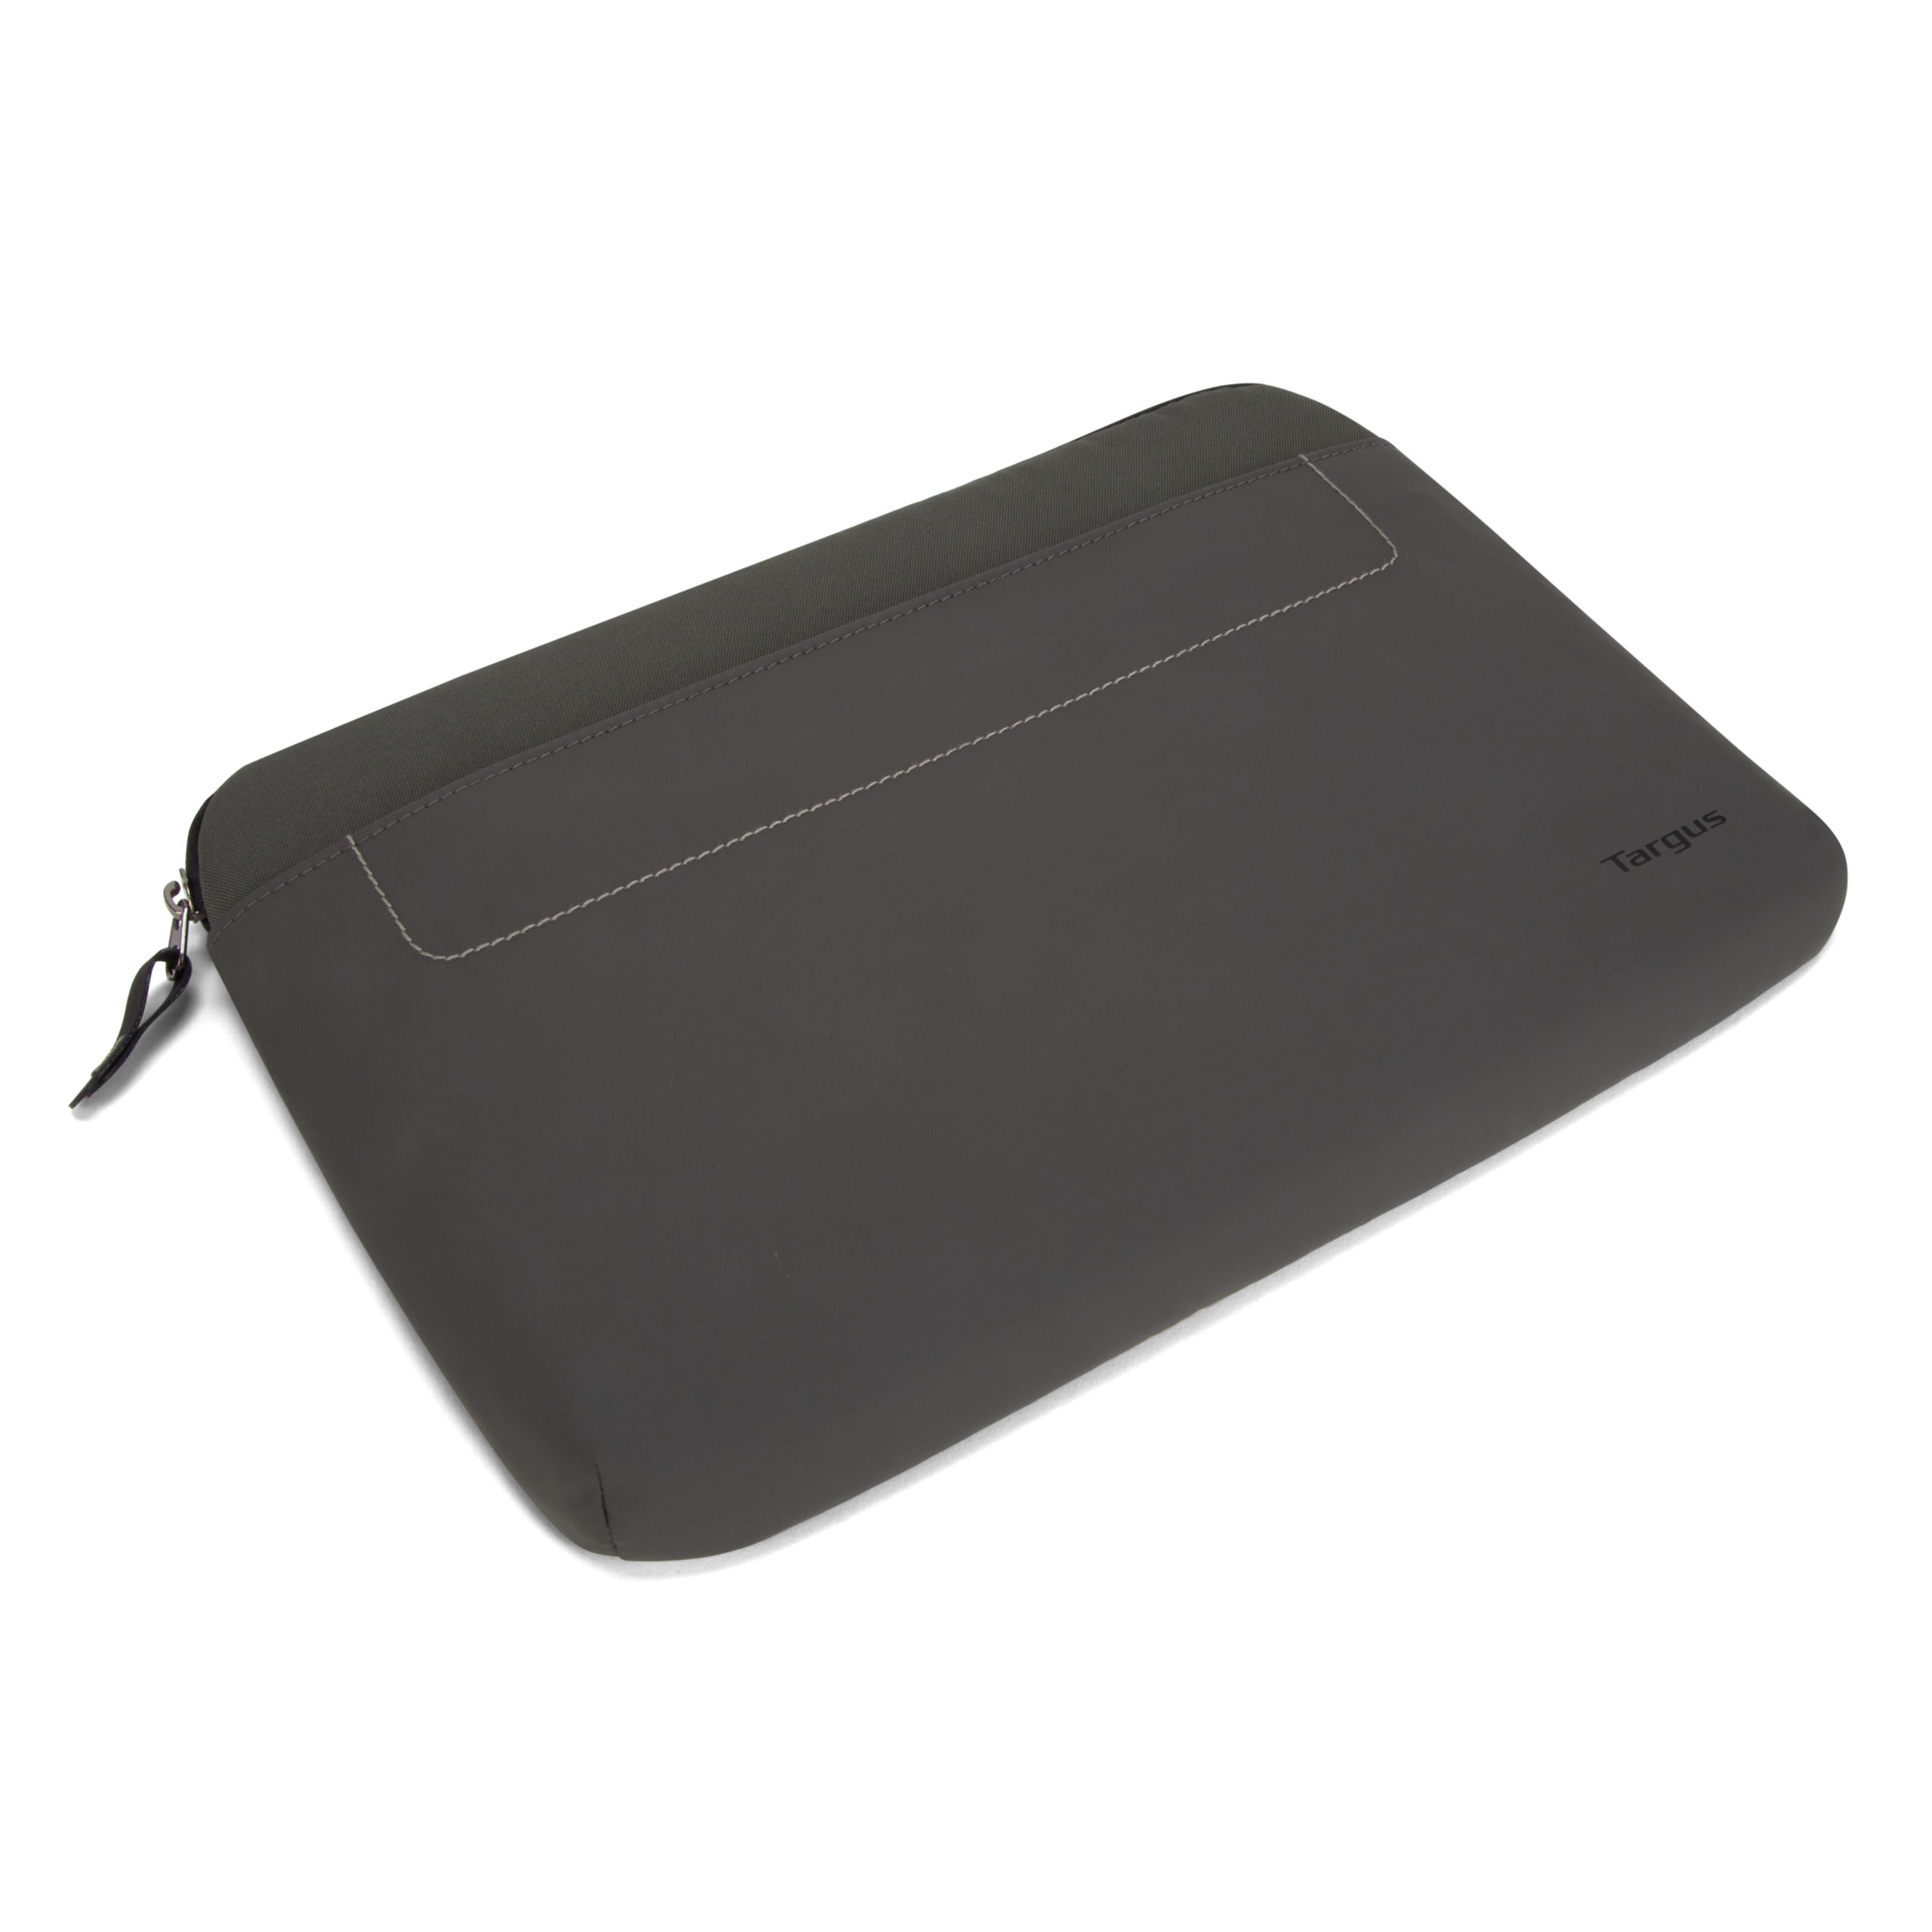 Targus Strata TSS63601US Carrying Case (Sleeve) for 12.1″ Netbook TSS63601US